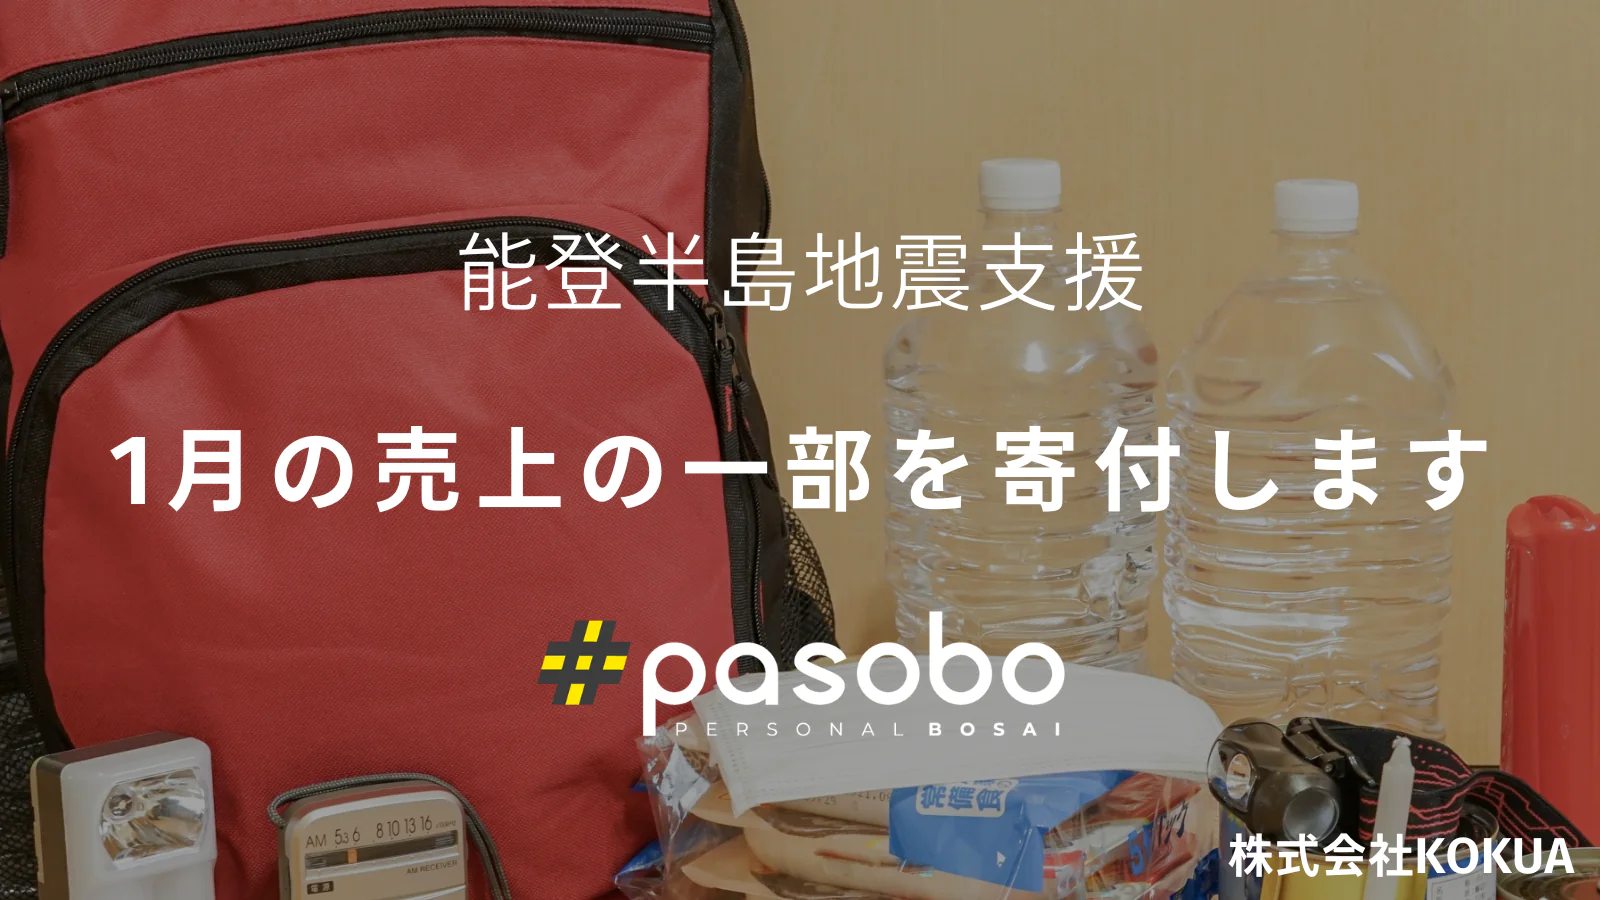 【お知らせ】pasoboの売上の一部を、能登半島地震の被災地へ寄付いたします。